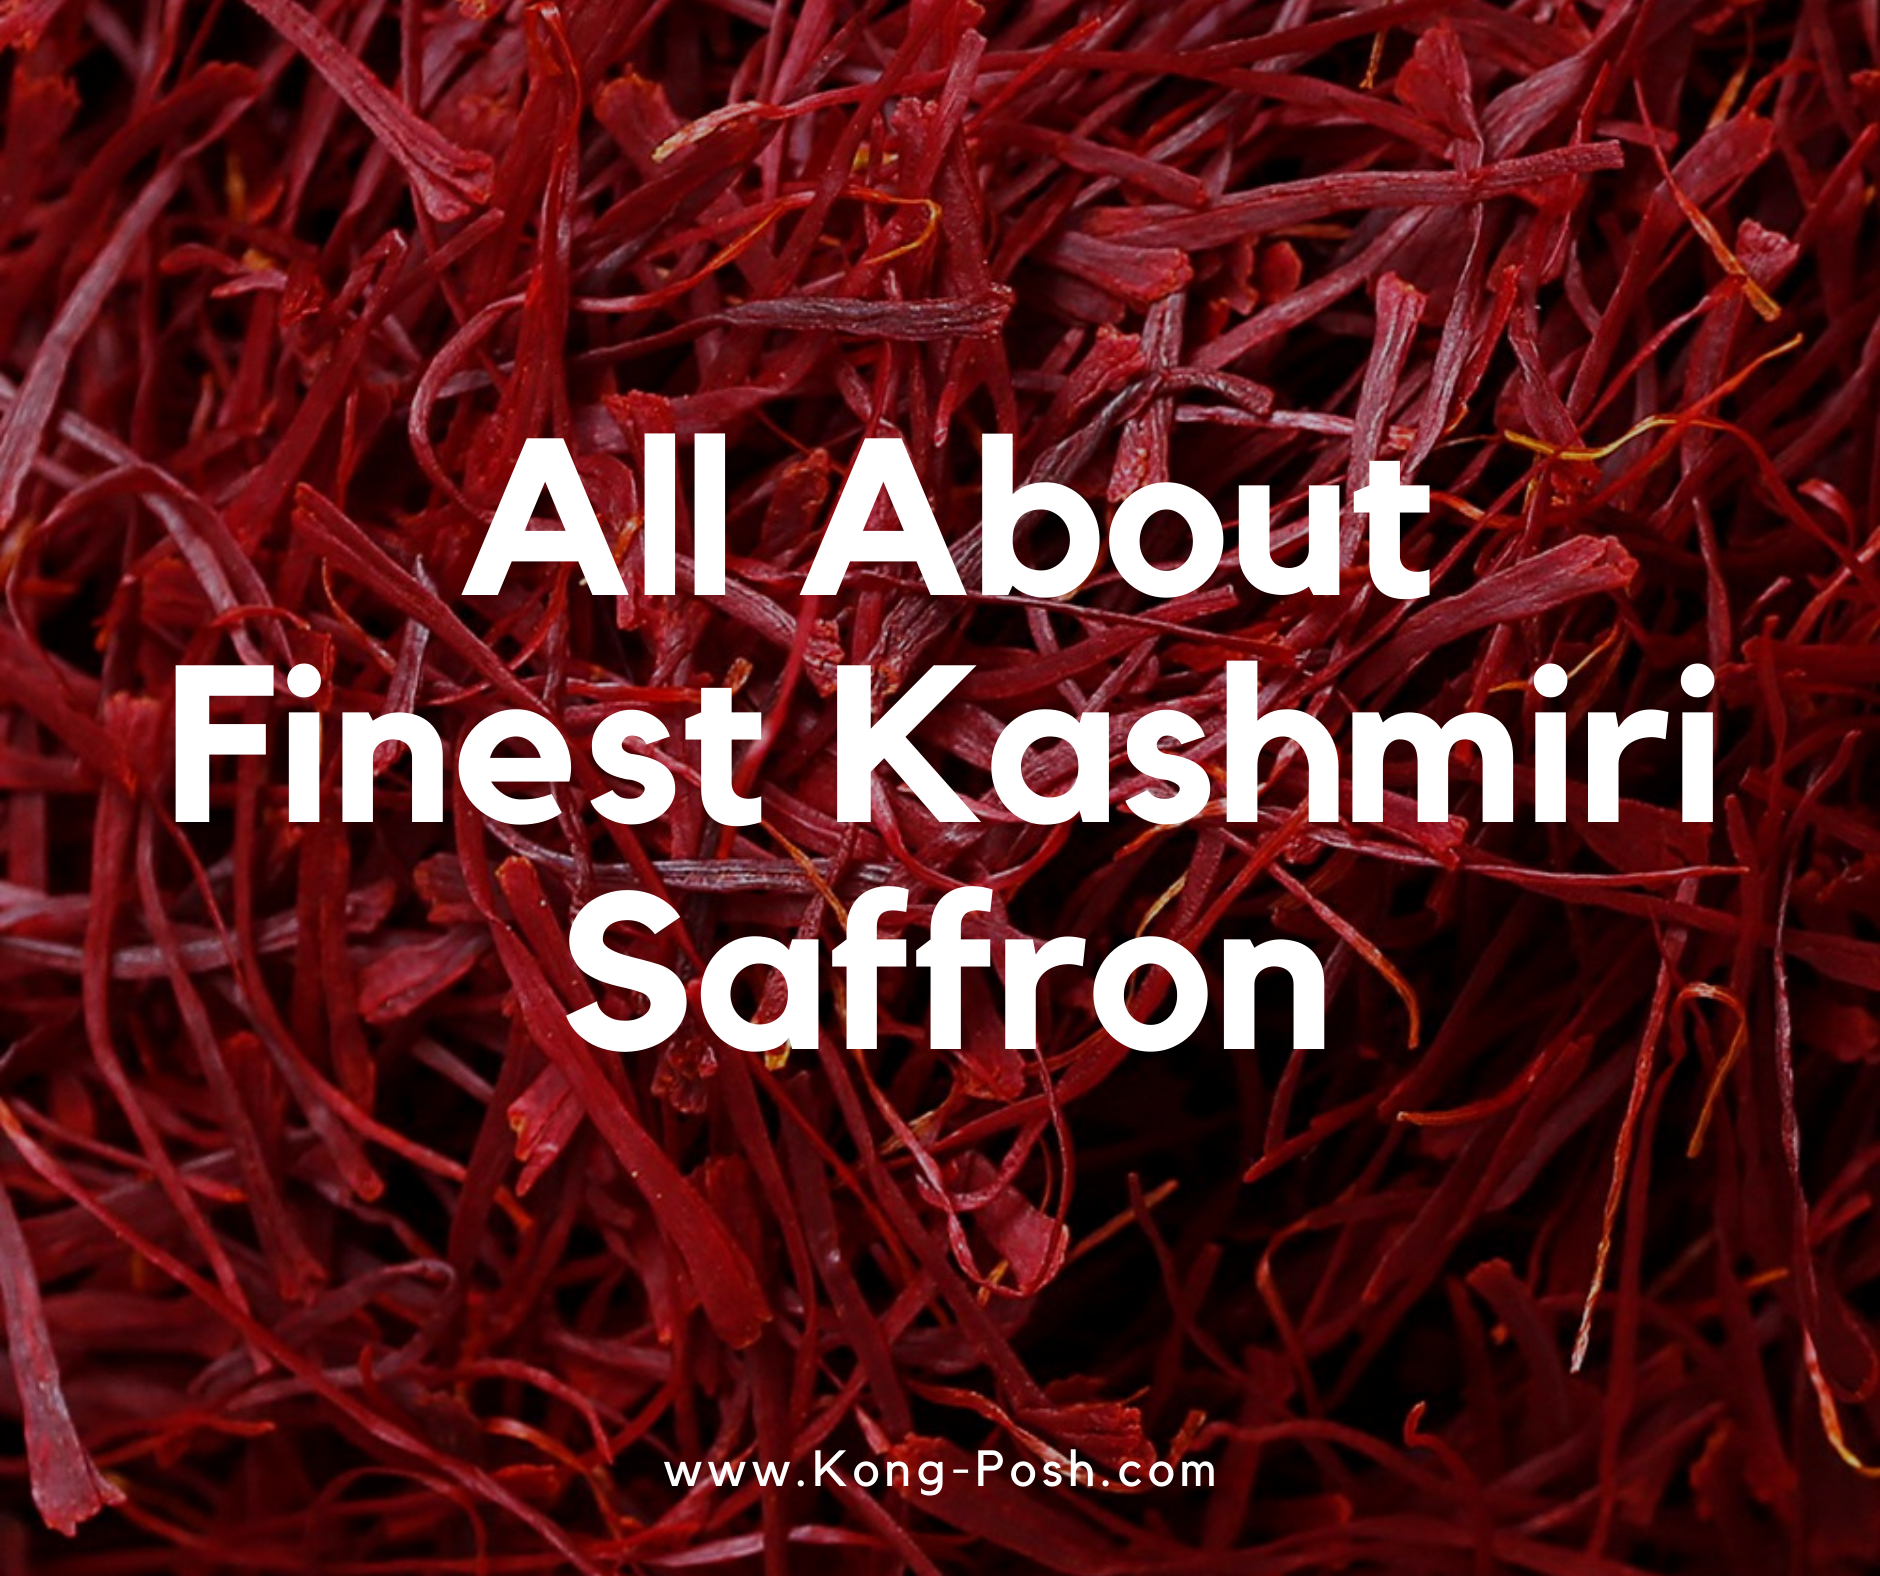 Where to Buy Saffron in Malaysia